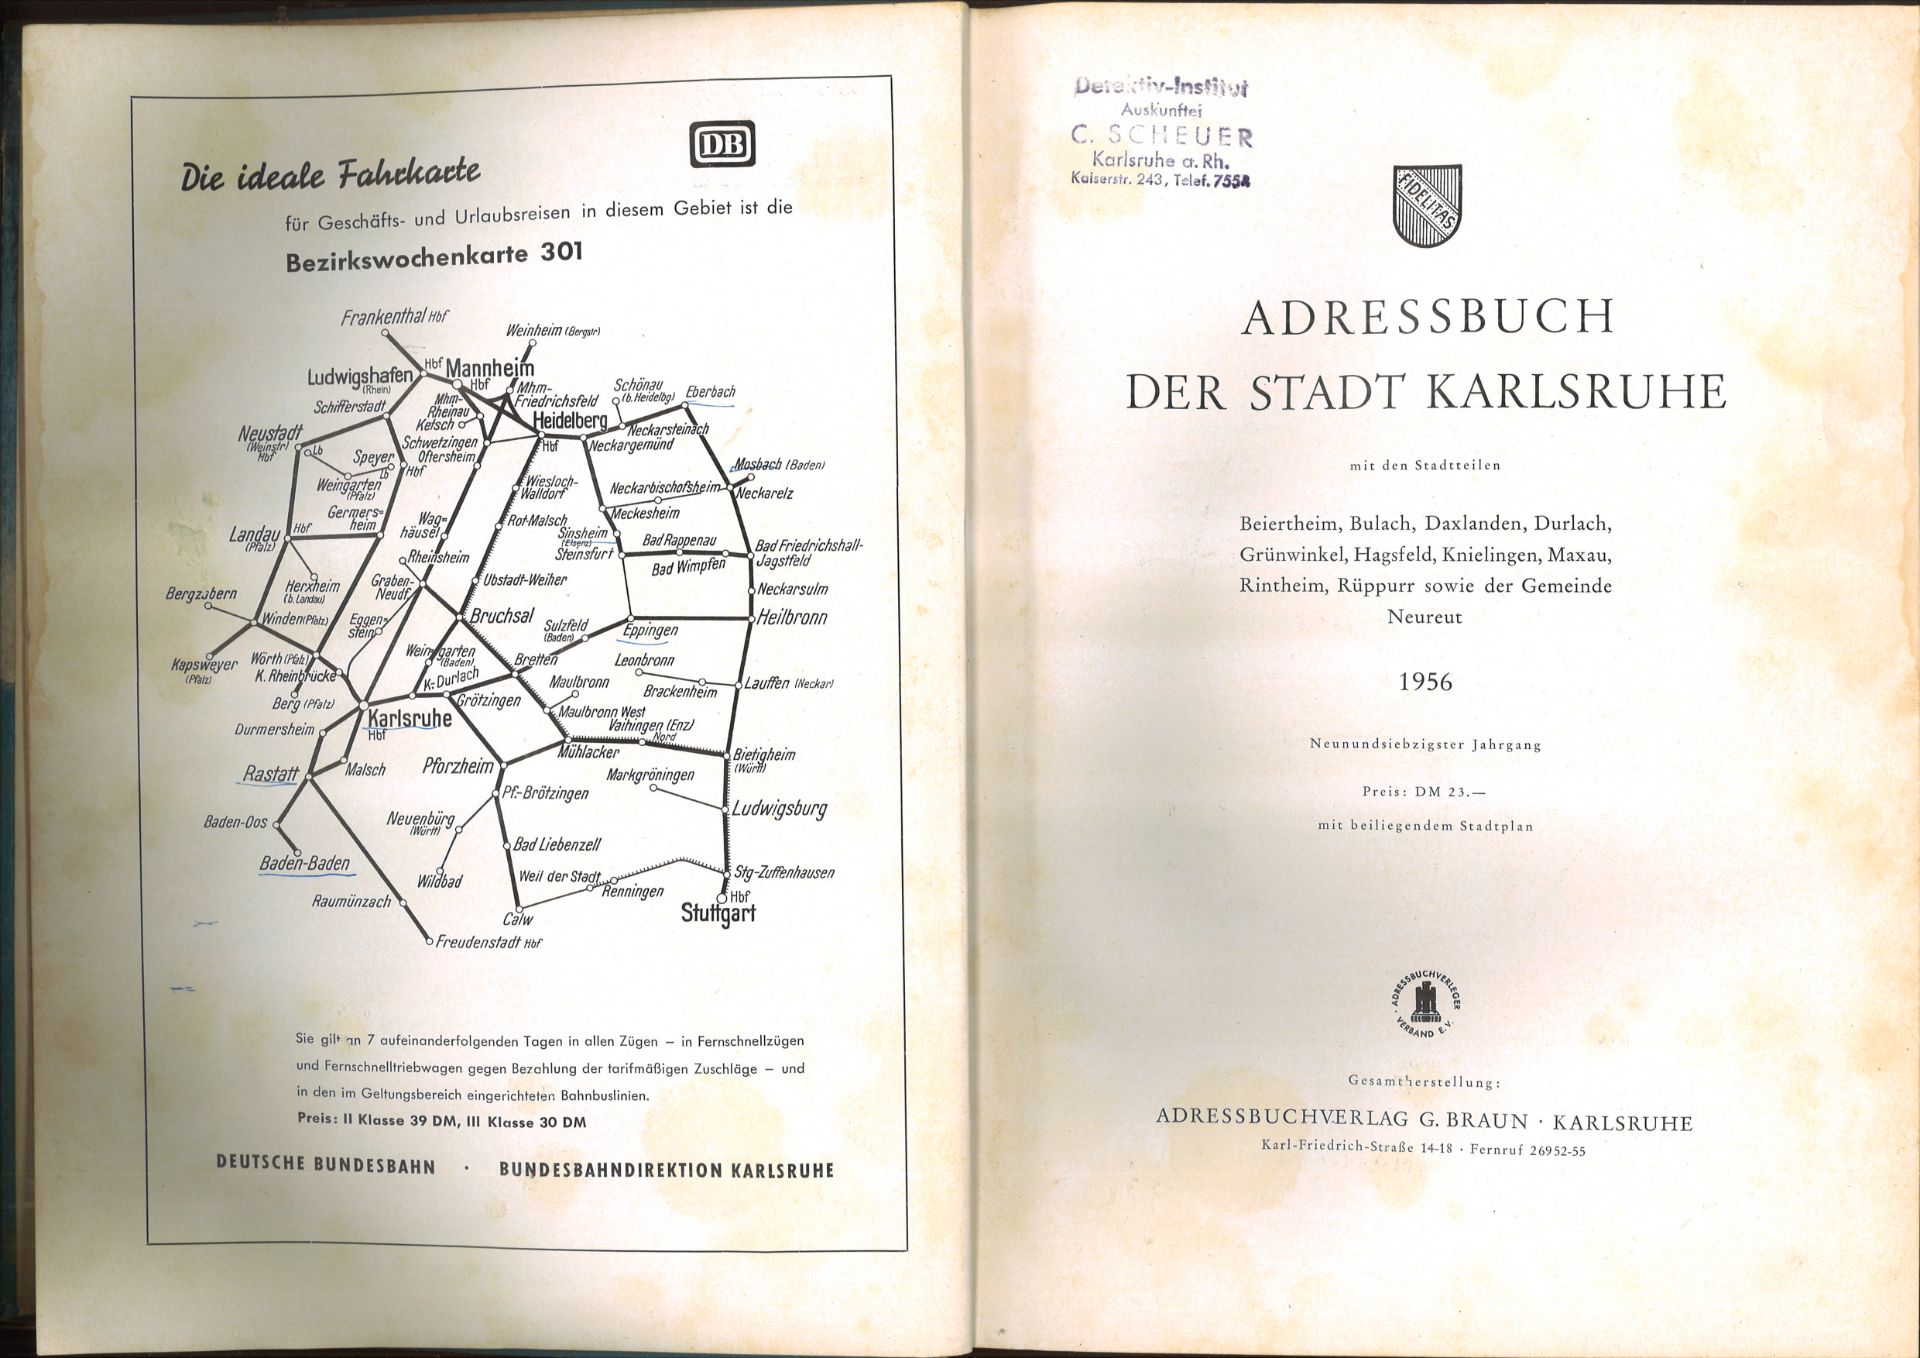 Adressbuch der Stadt Karlsruhe von 1956, neunundsiebzigster Jahrgang, Einband beschädigt, - Image 2 of 2